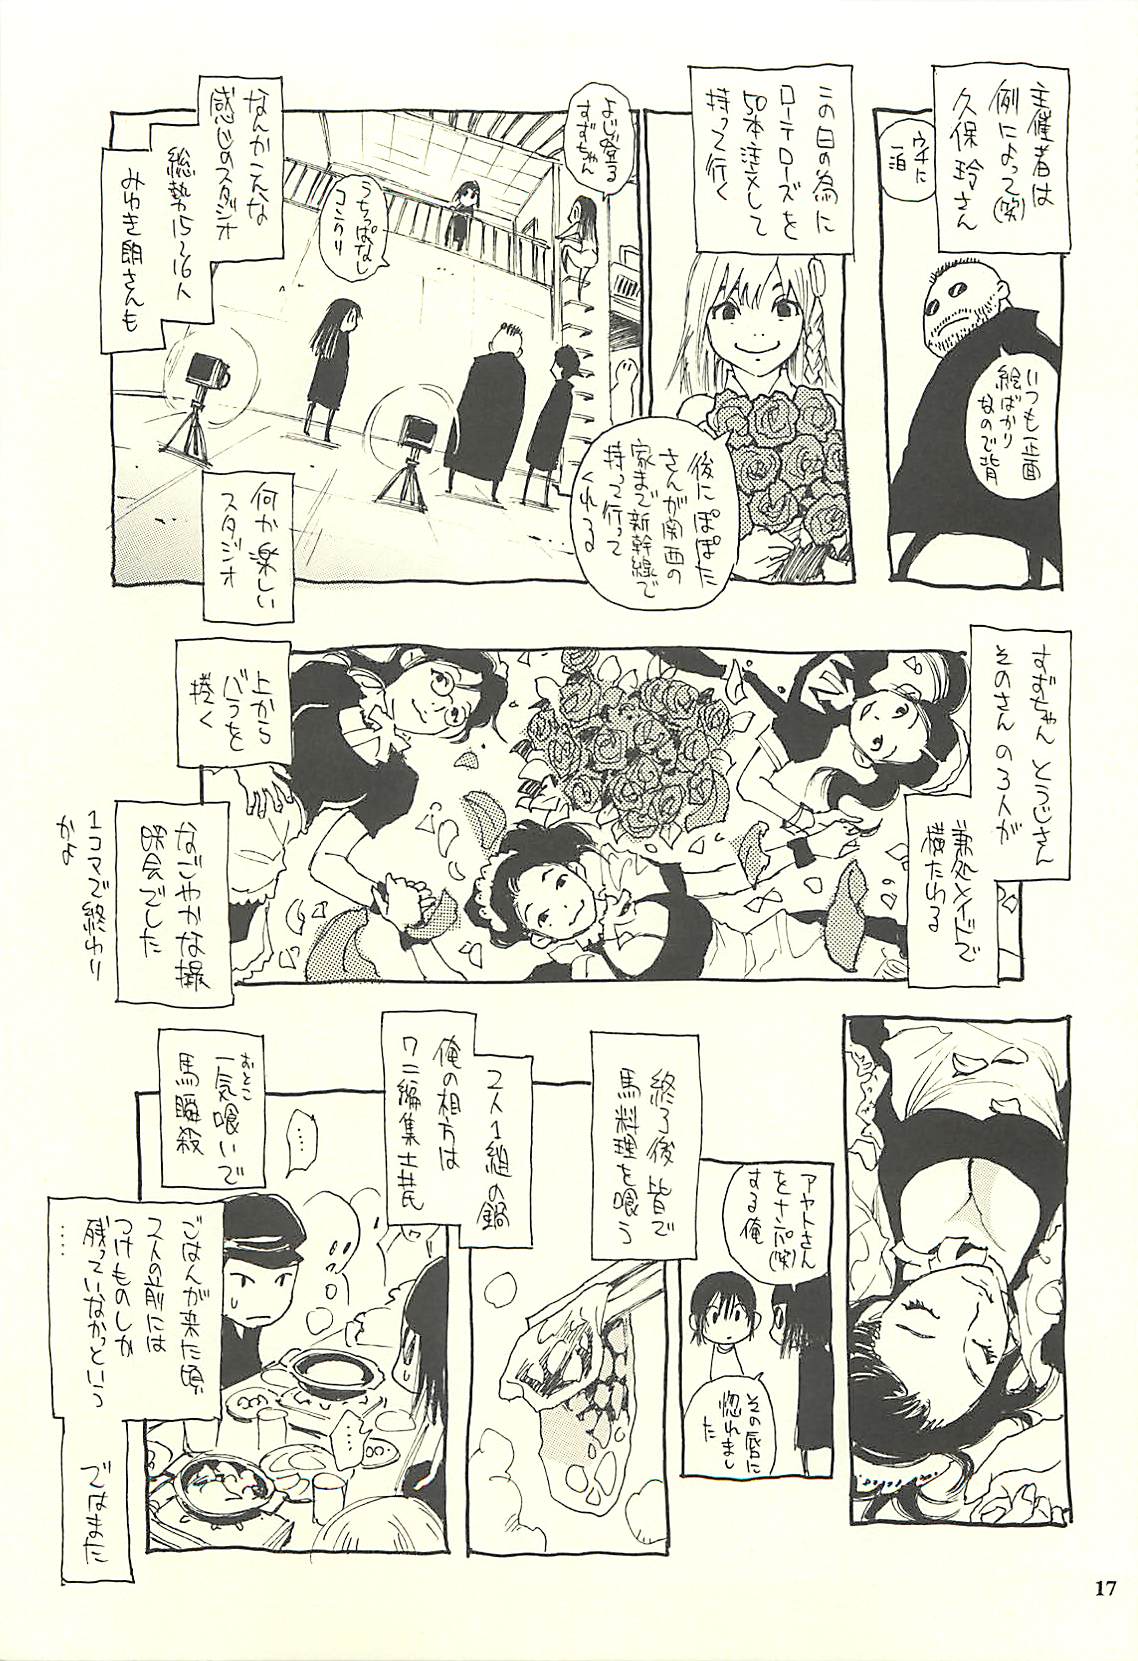 (C75) [NOUZUI MAJUTSU, NO-NO'S (Kawara Keisuke, Kanesada Keishi)] Nouzui Kawaraban Hinichijoutekina Nichijou IV (C75) [脳髄魔術, NO-NO'S (瓦敬助, 兼処敬士)] 脳髄瓦版 非日常的な日常IV